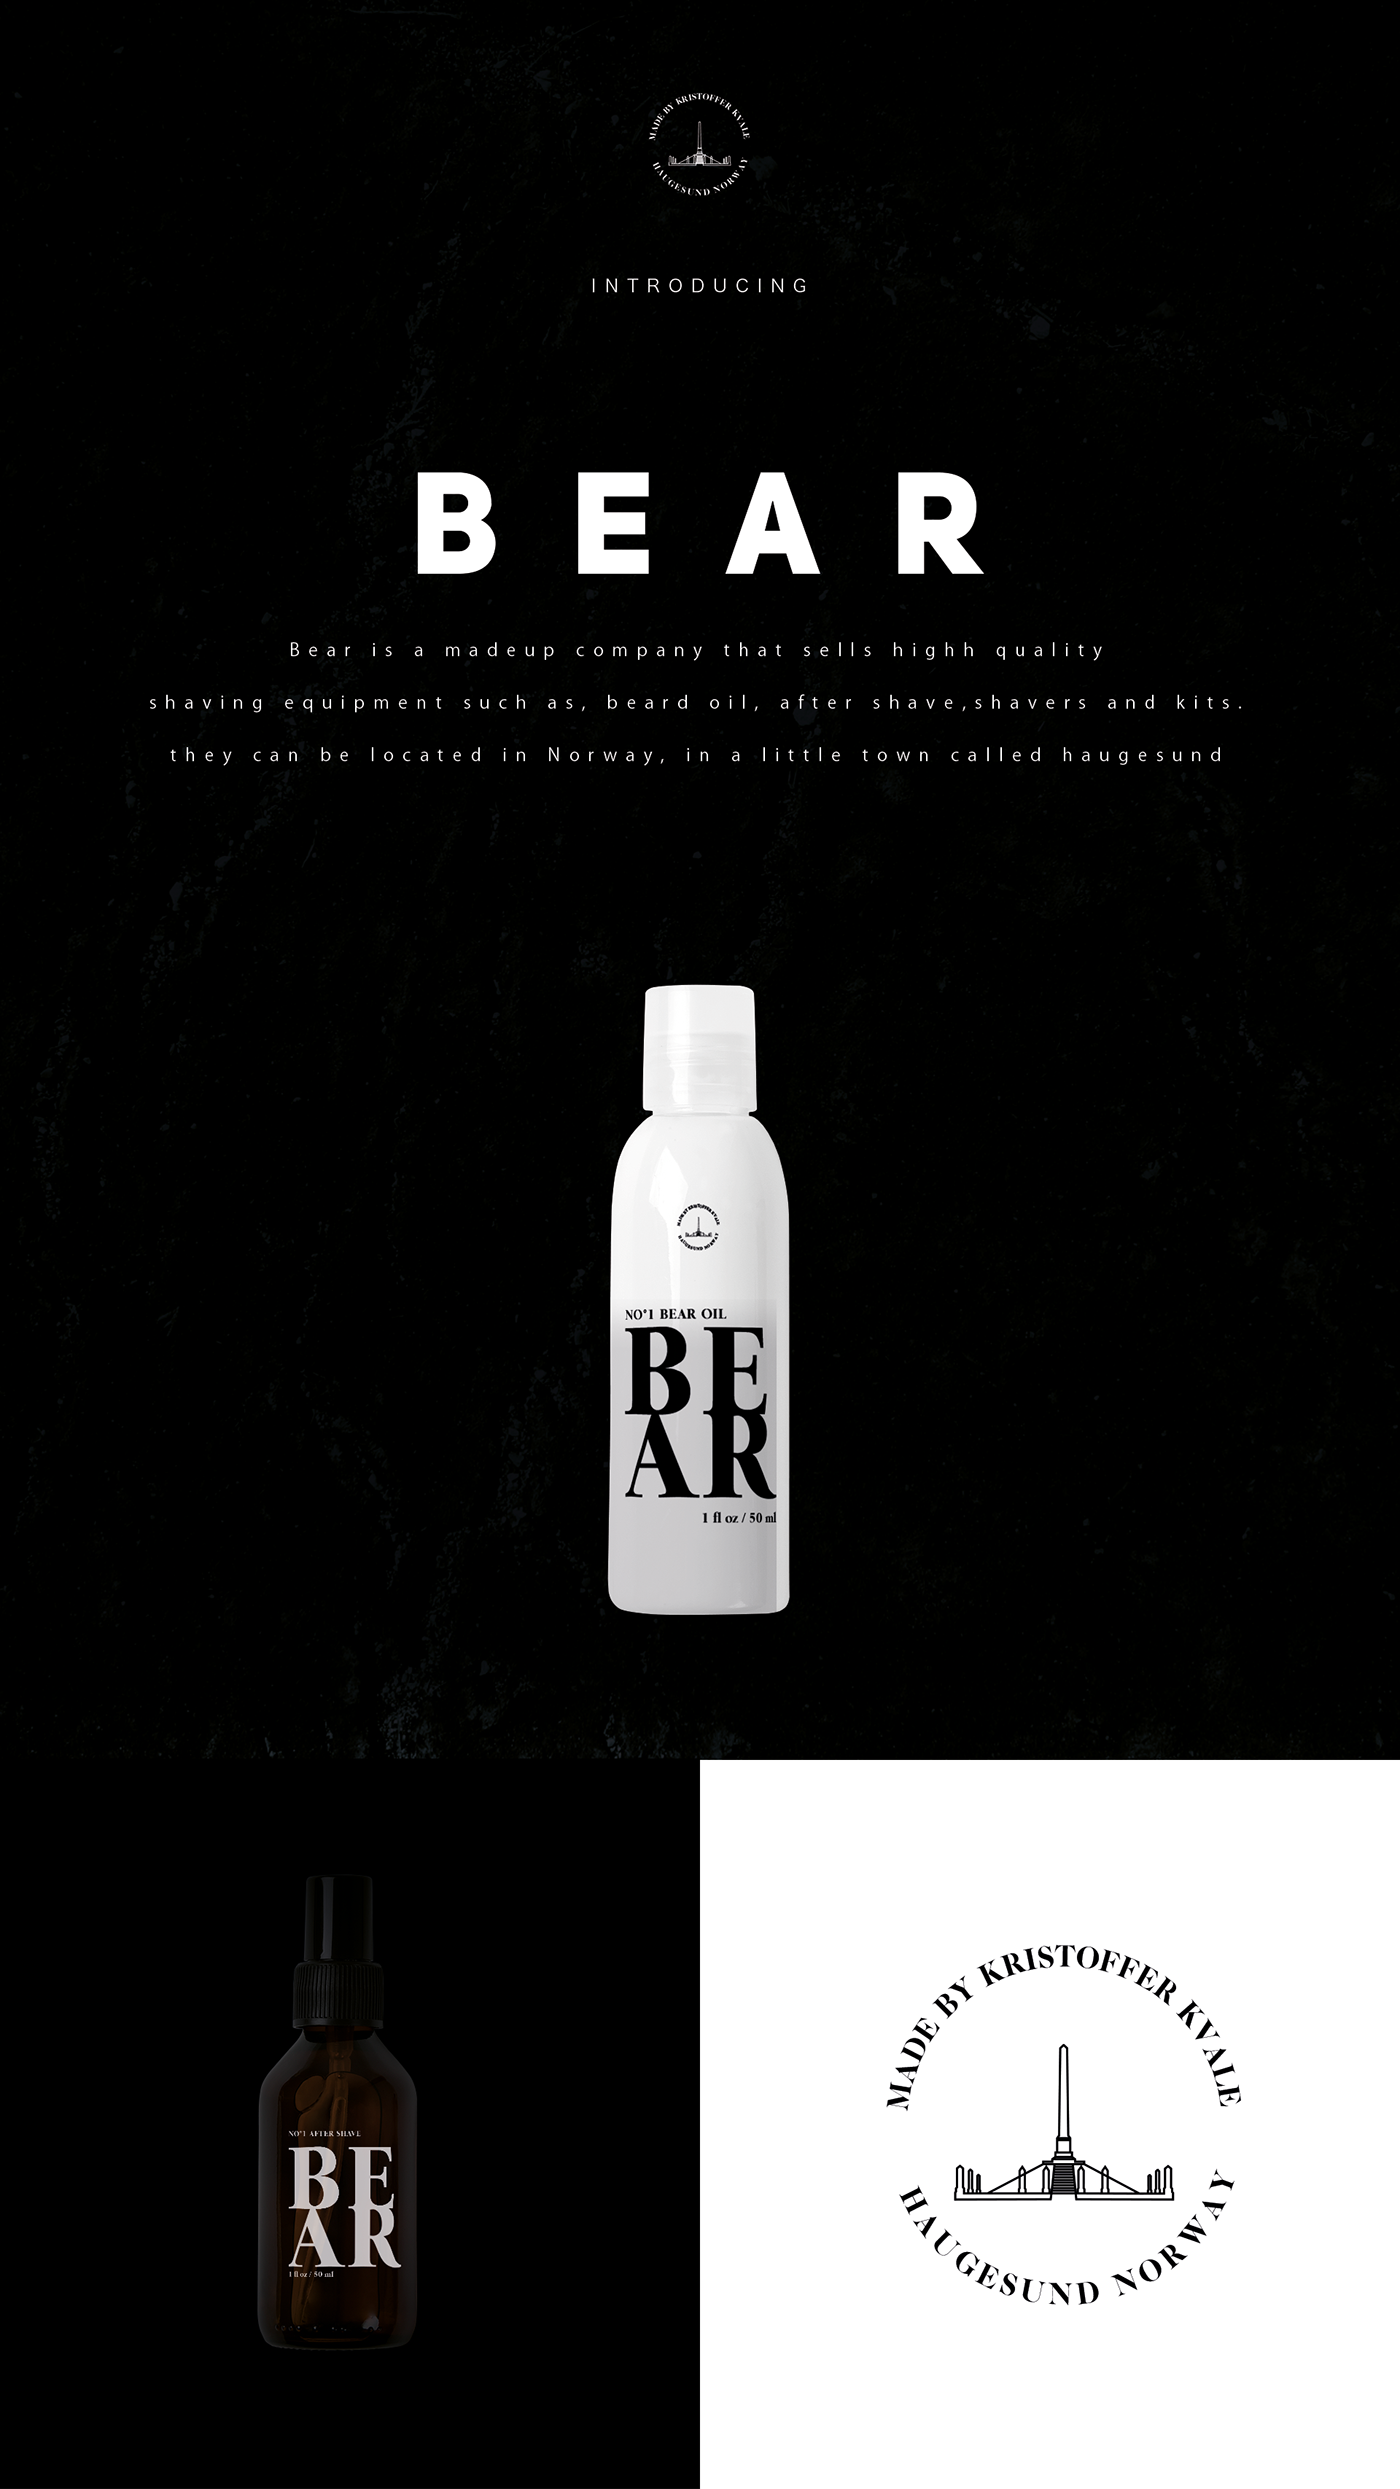 beard shaving Hipster bear company brand